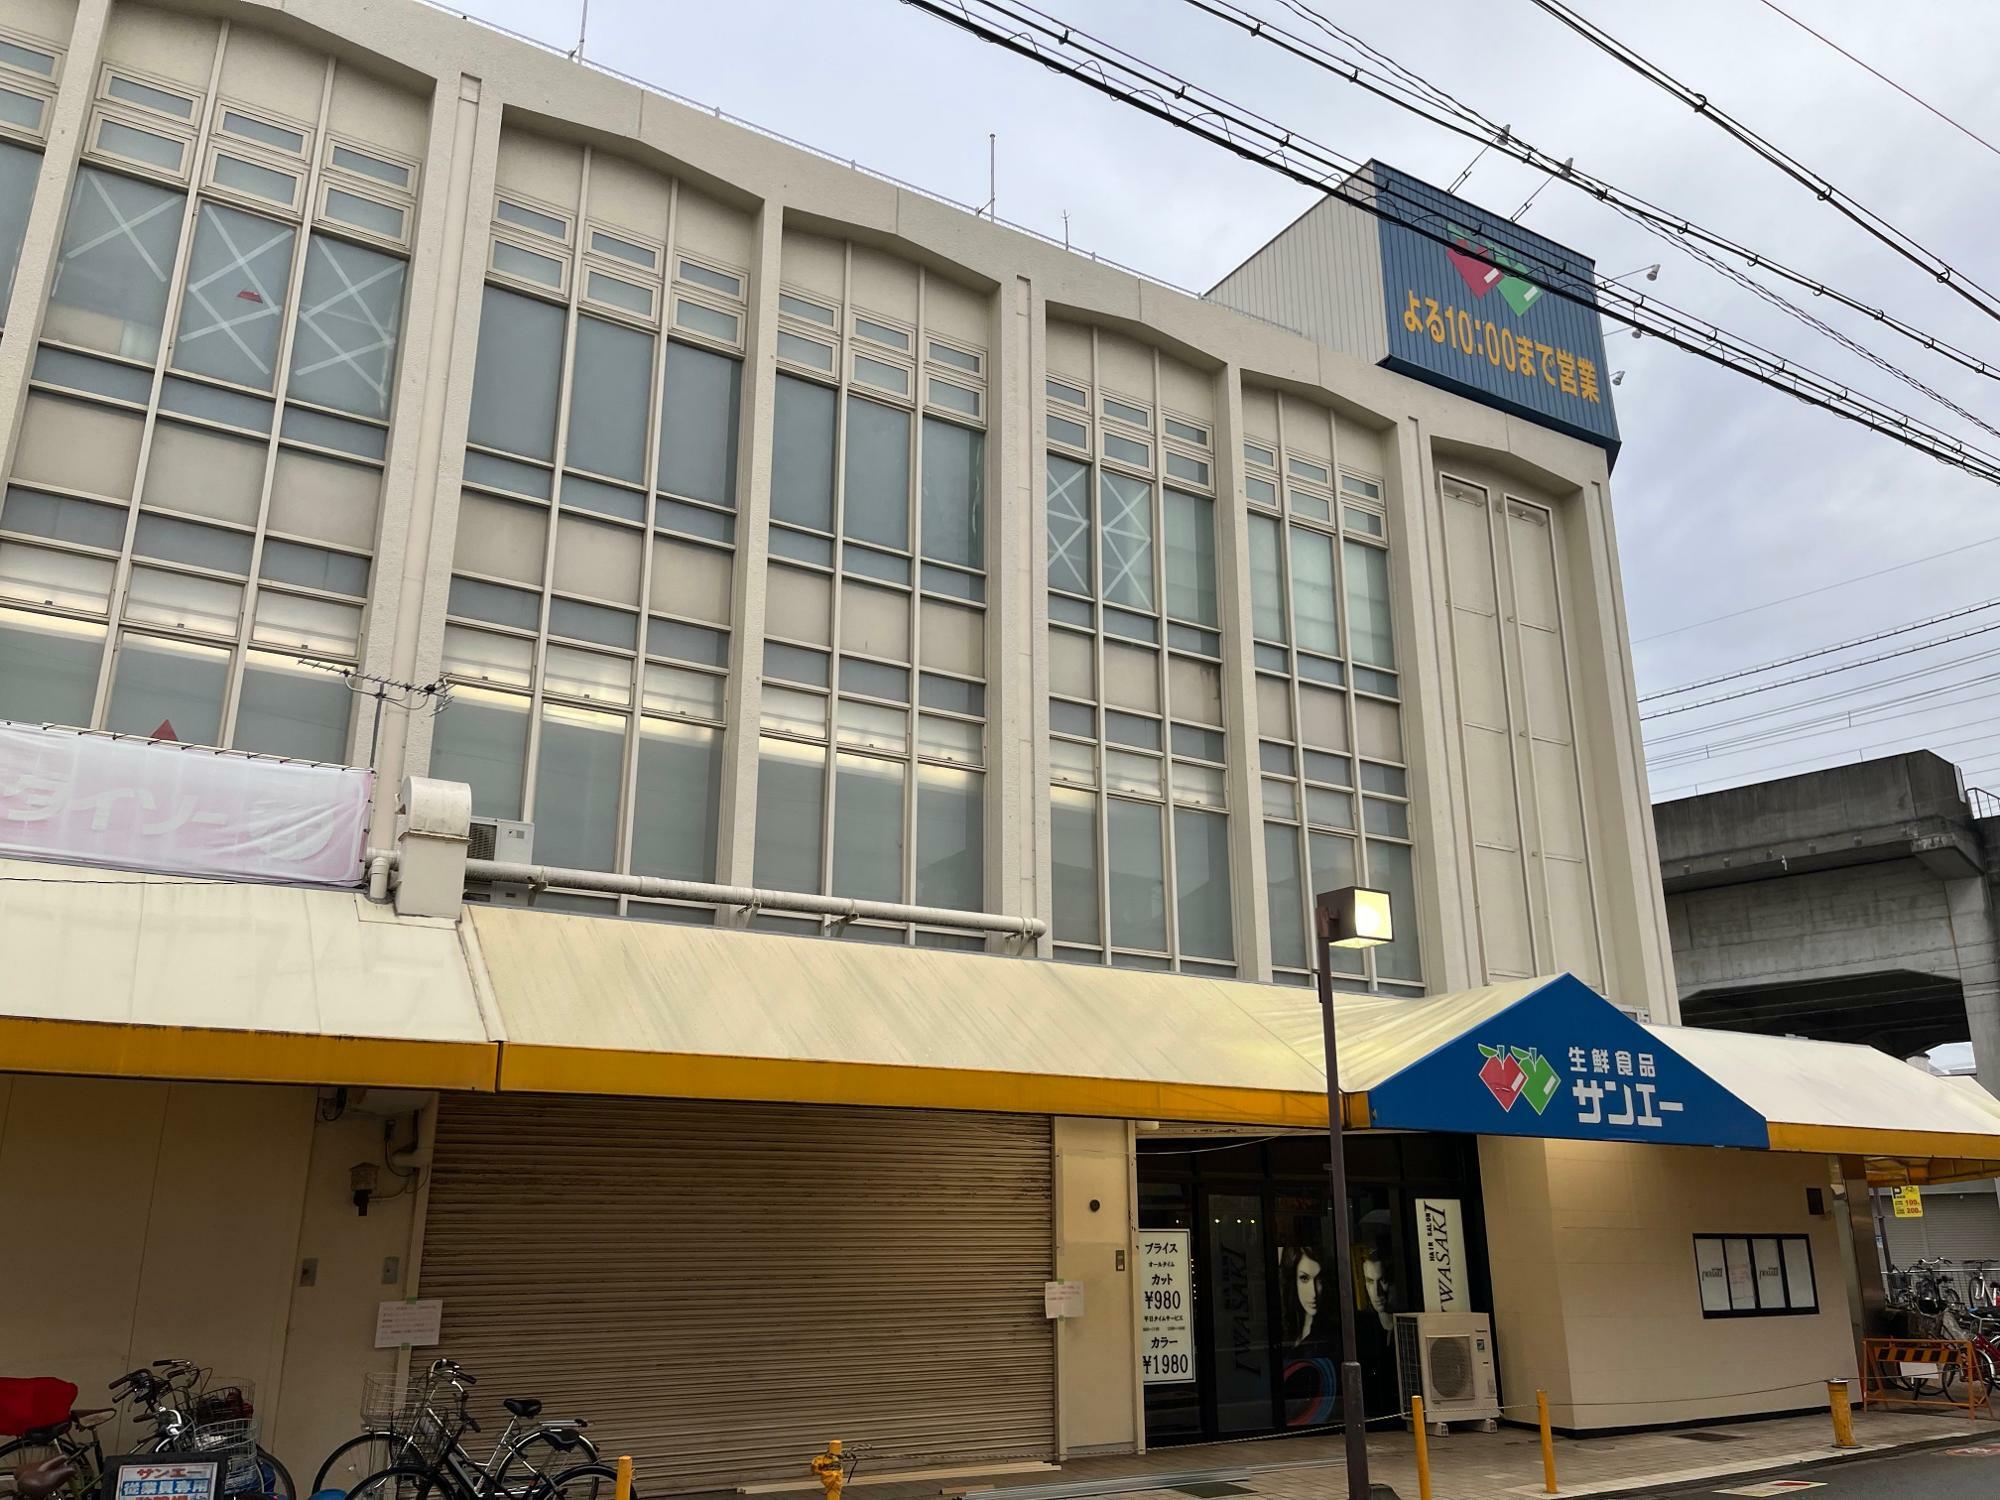 サンエー今川店。右の高架は近鉄南大阪線の今川駅です